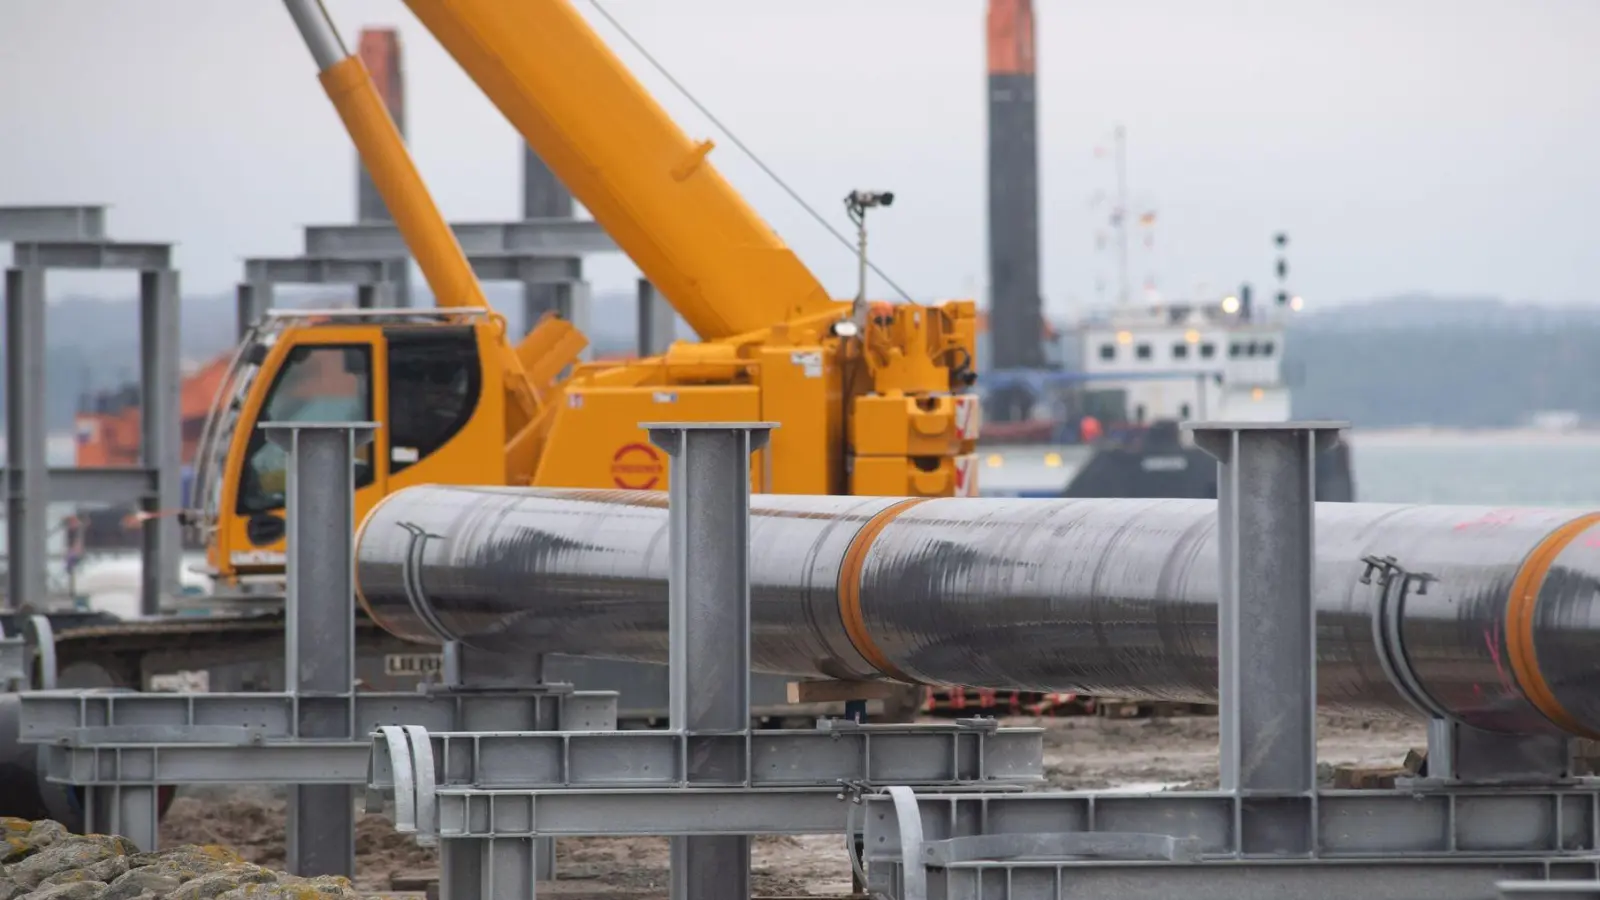 Seit Beginn des russischen Angriffs auf die Ukraine werden in Deutschland vermehrt LNG-Terminals gebaut - wie hier in Sassnitz auf Rügen. IEA-Chef Birol lobt die schnelle Wende der deutschen Energiepolitik. (Foto: dpa)